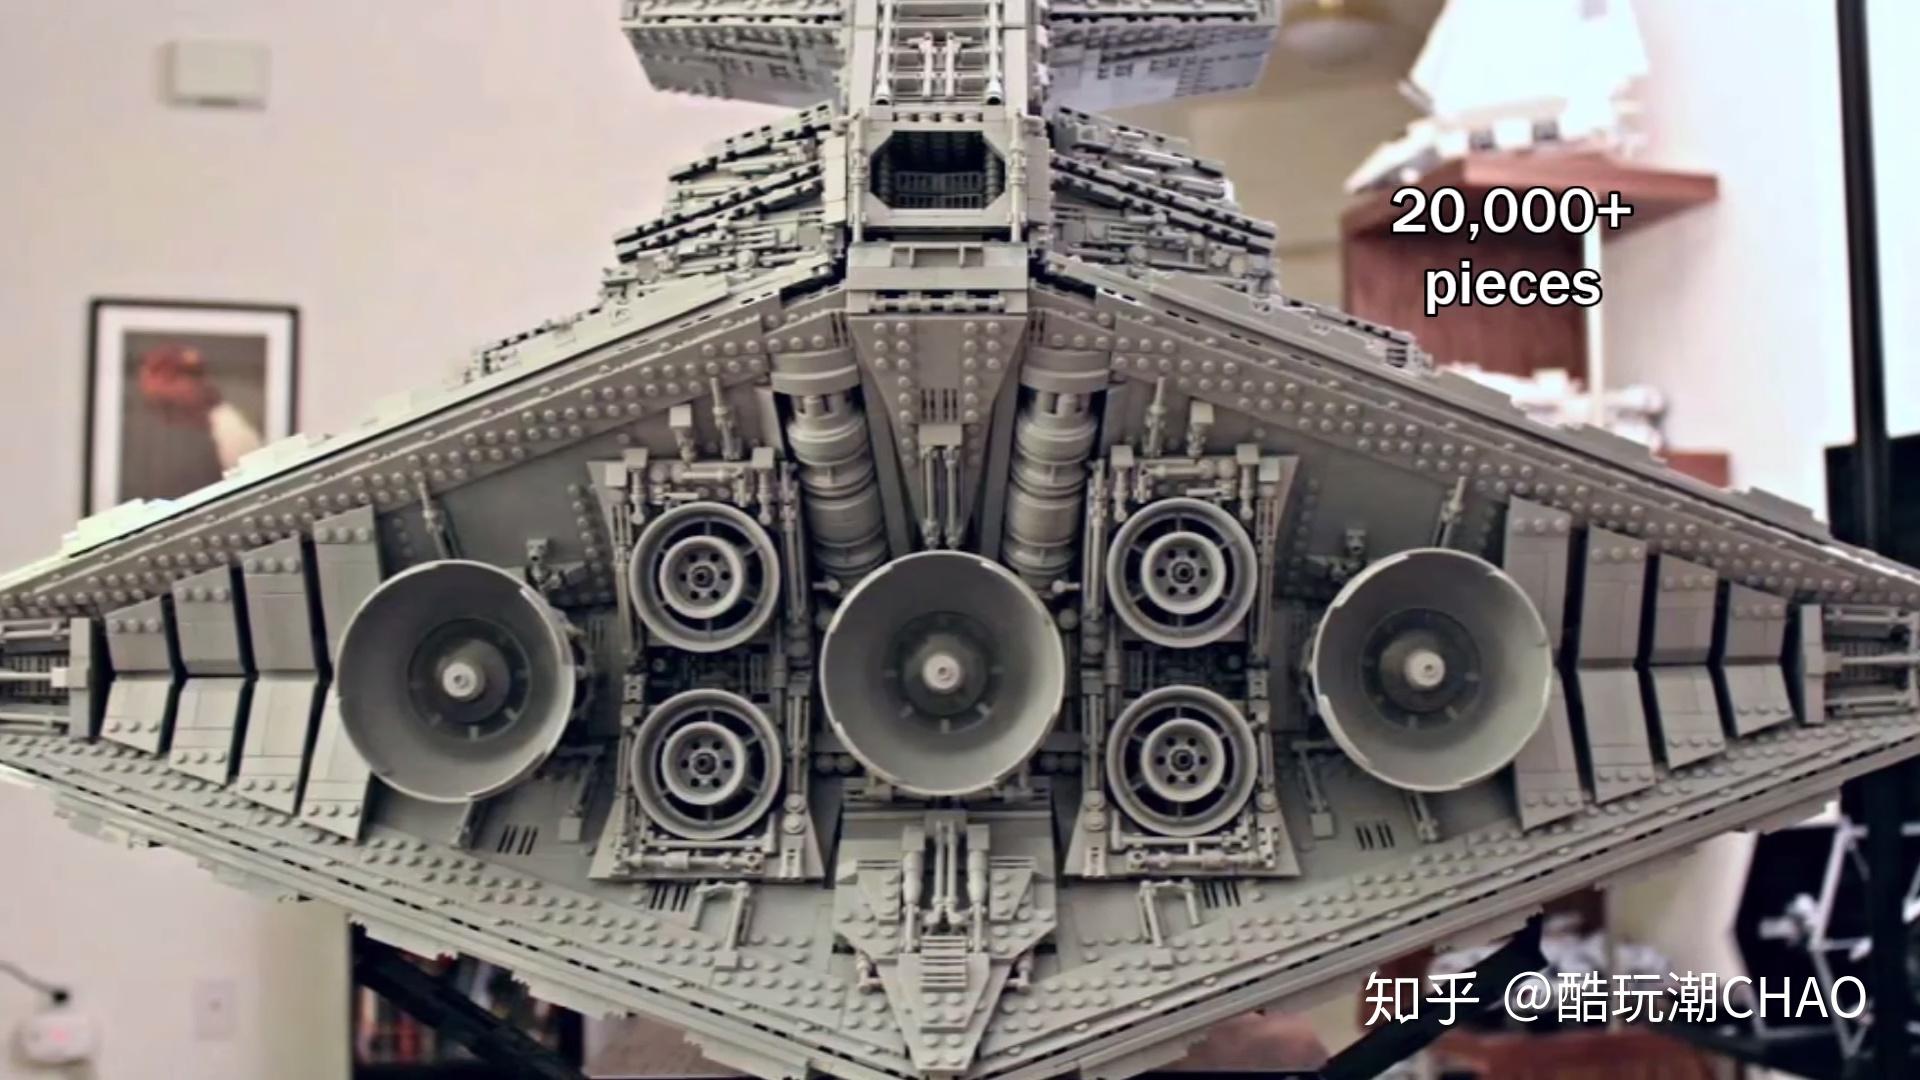 国外乐高玩家自制的巨型星球大战帝国级歼星舰舰队超强内部细节完整而